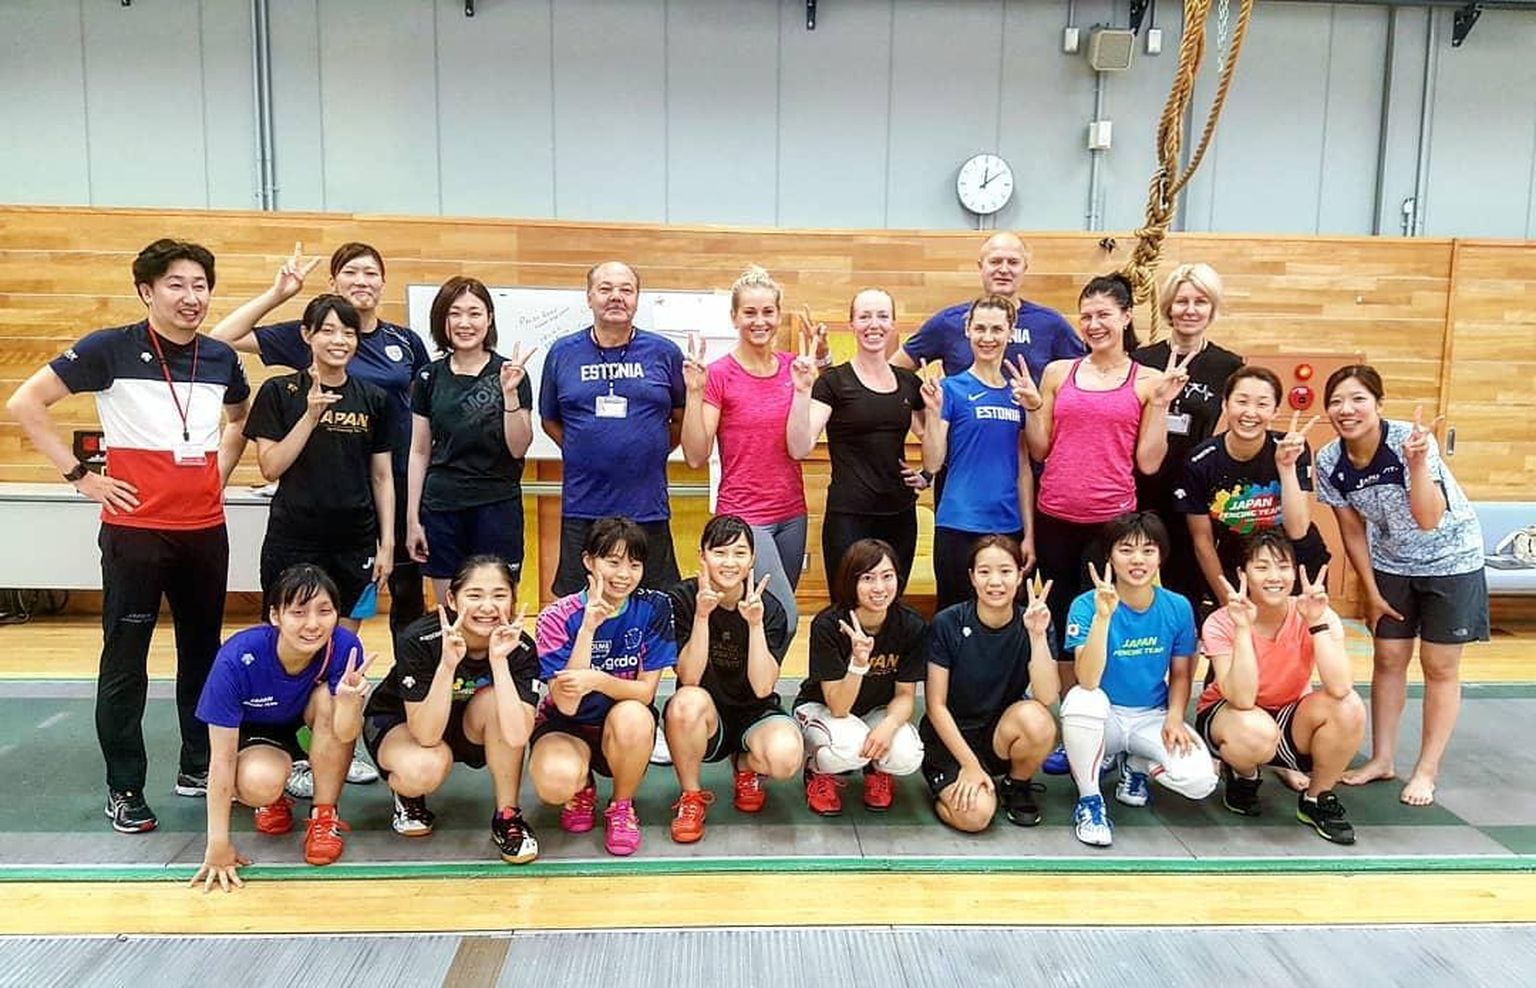 Eesti MMi koondise liikmed Julia Beljajeva, Irina Embrich ja Kristina Kuusk kaasasid Nelli Differti ning harjutasid MMiks Jaapanis. Sparringupartnereid oli neil murdu.